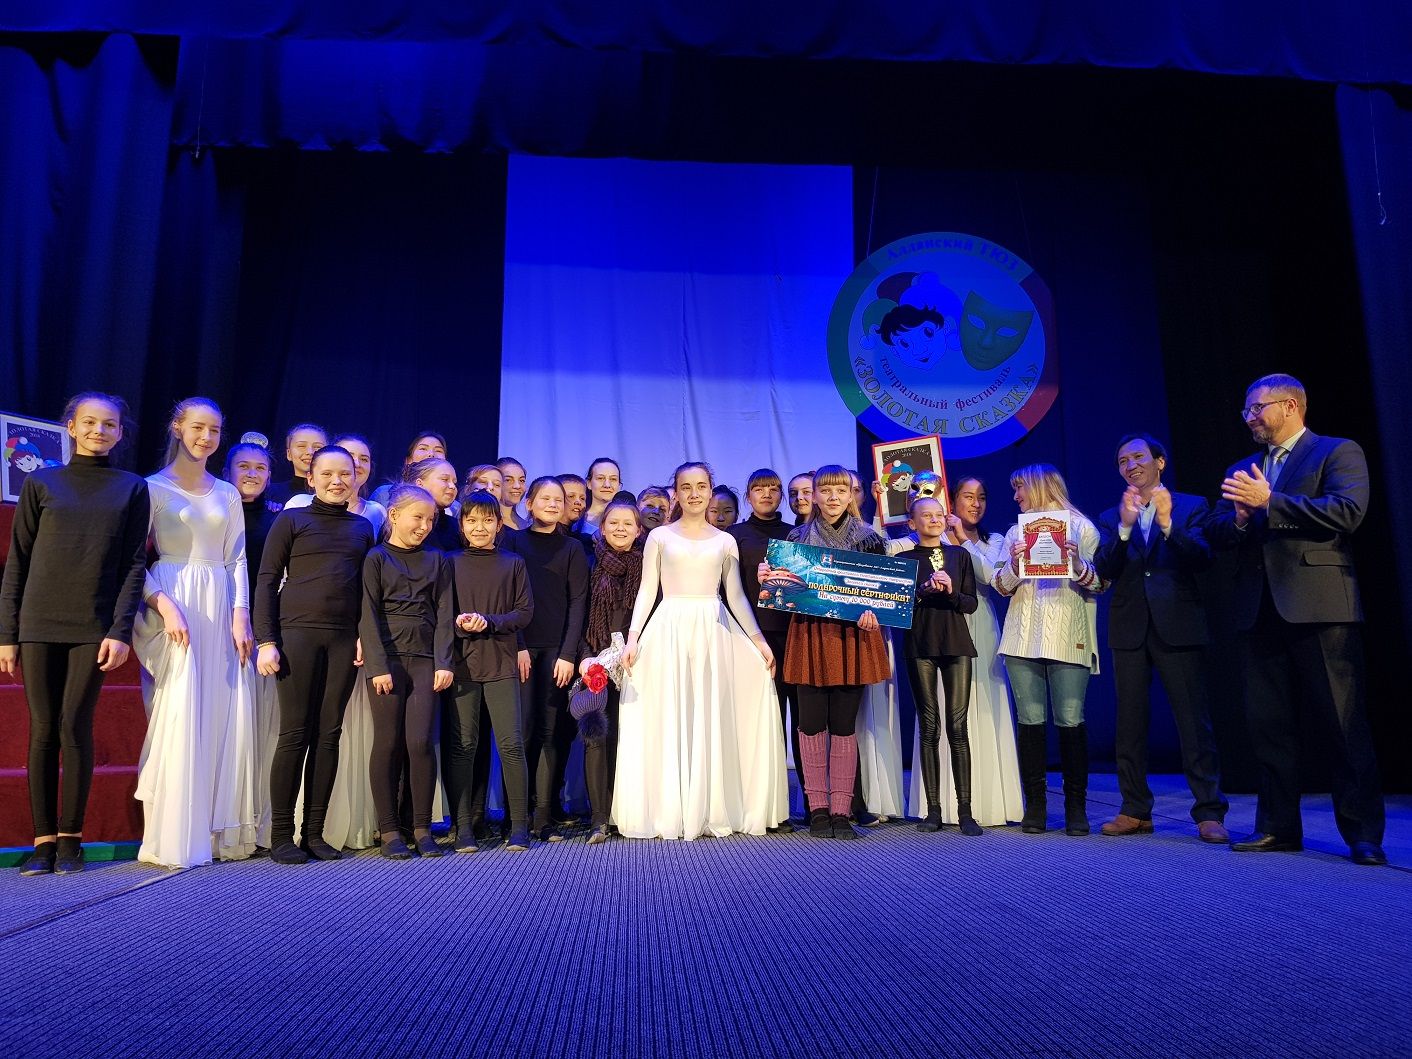 Приглашение в кино получили участники театрального фестиваля «Золотая сказка» | Ассоциация строителей Амуро-Якутской магистрали»